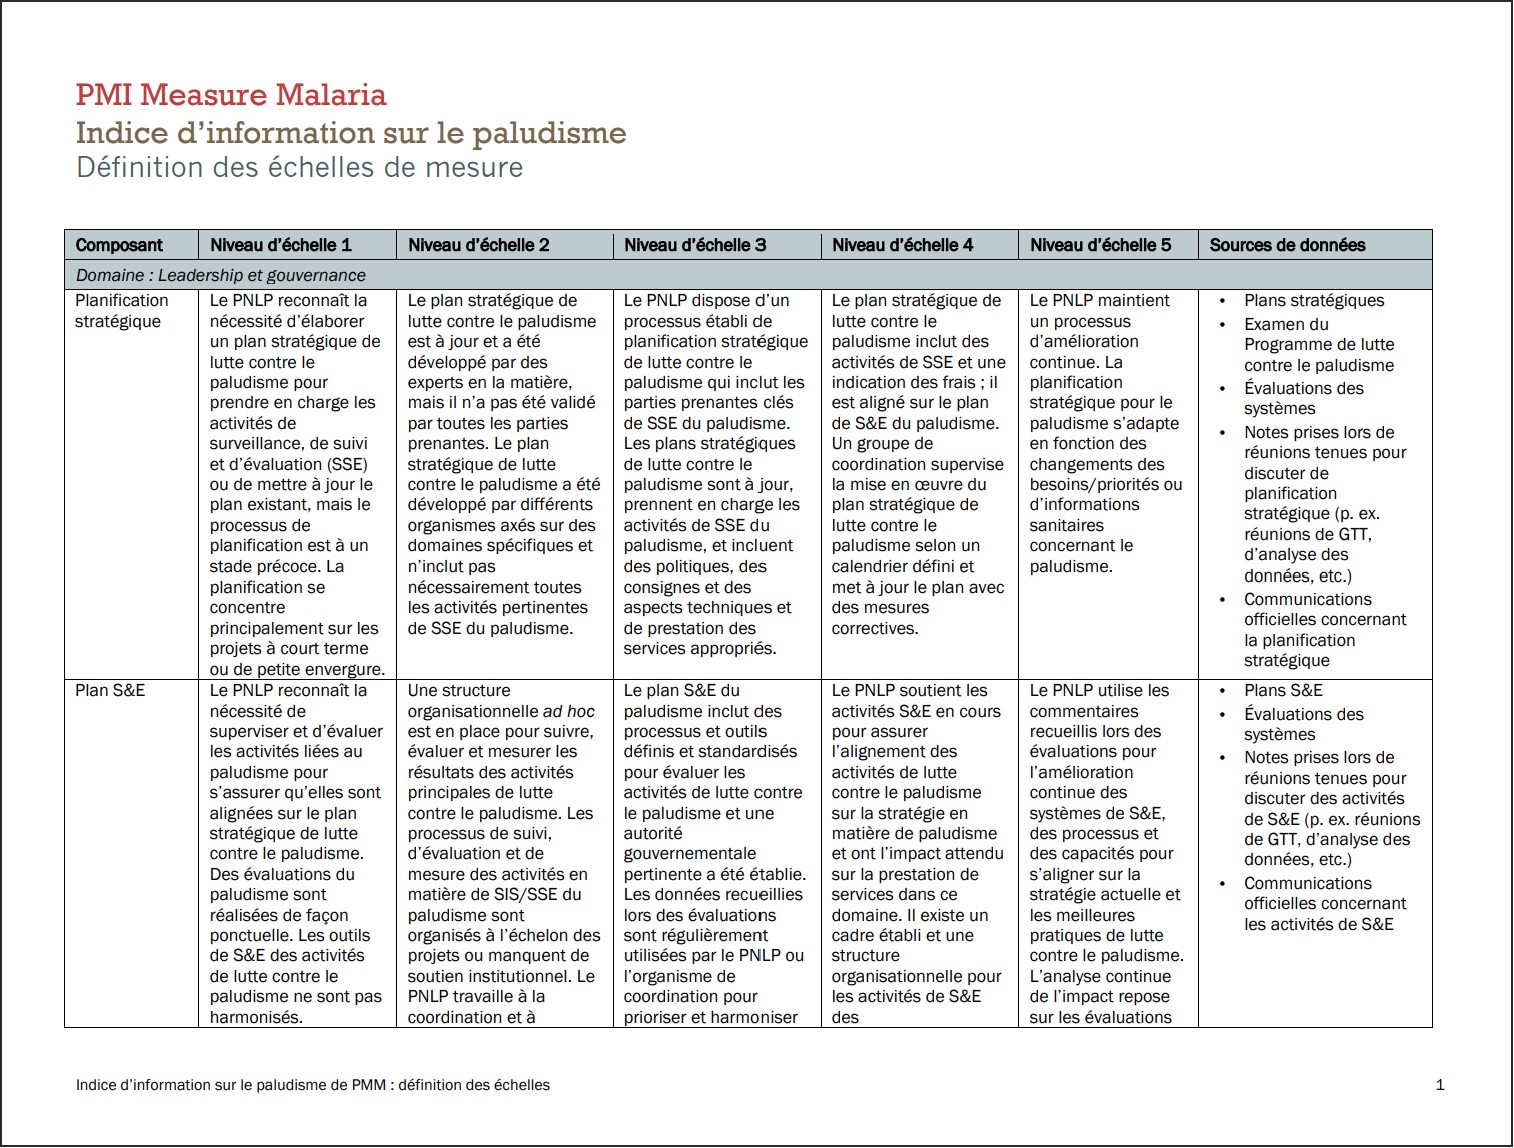 Indice d’information sur le paludisme : Définition des échelles de mesure